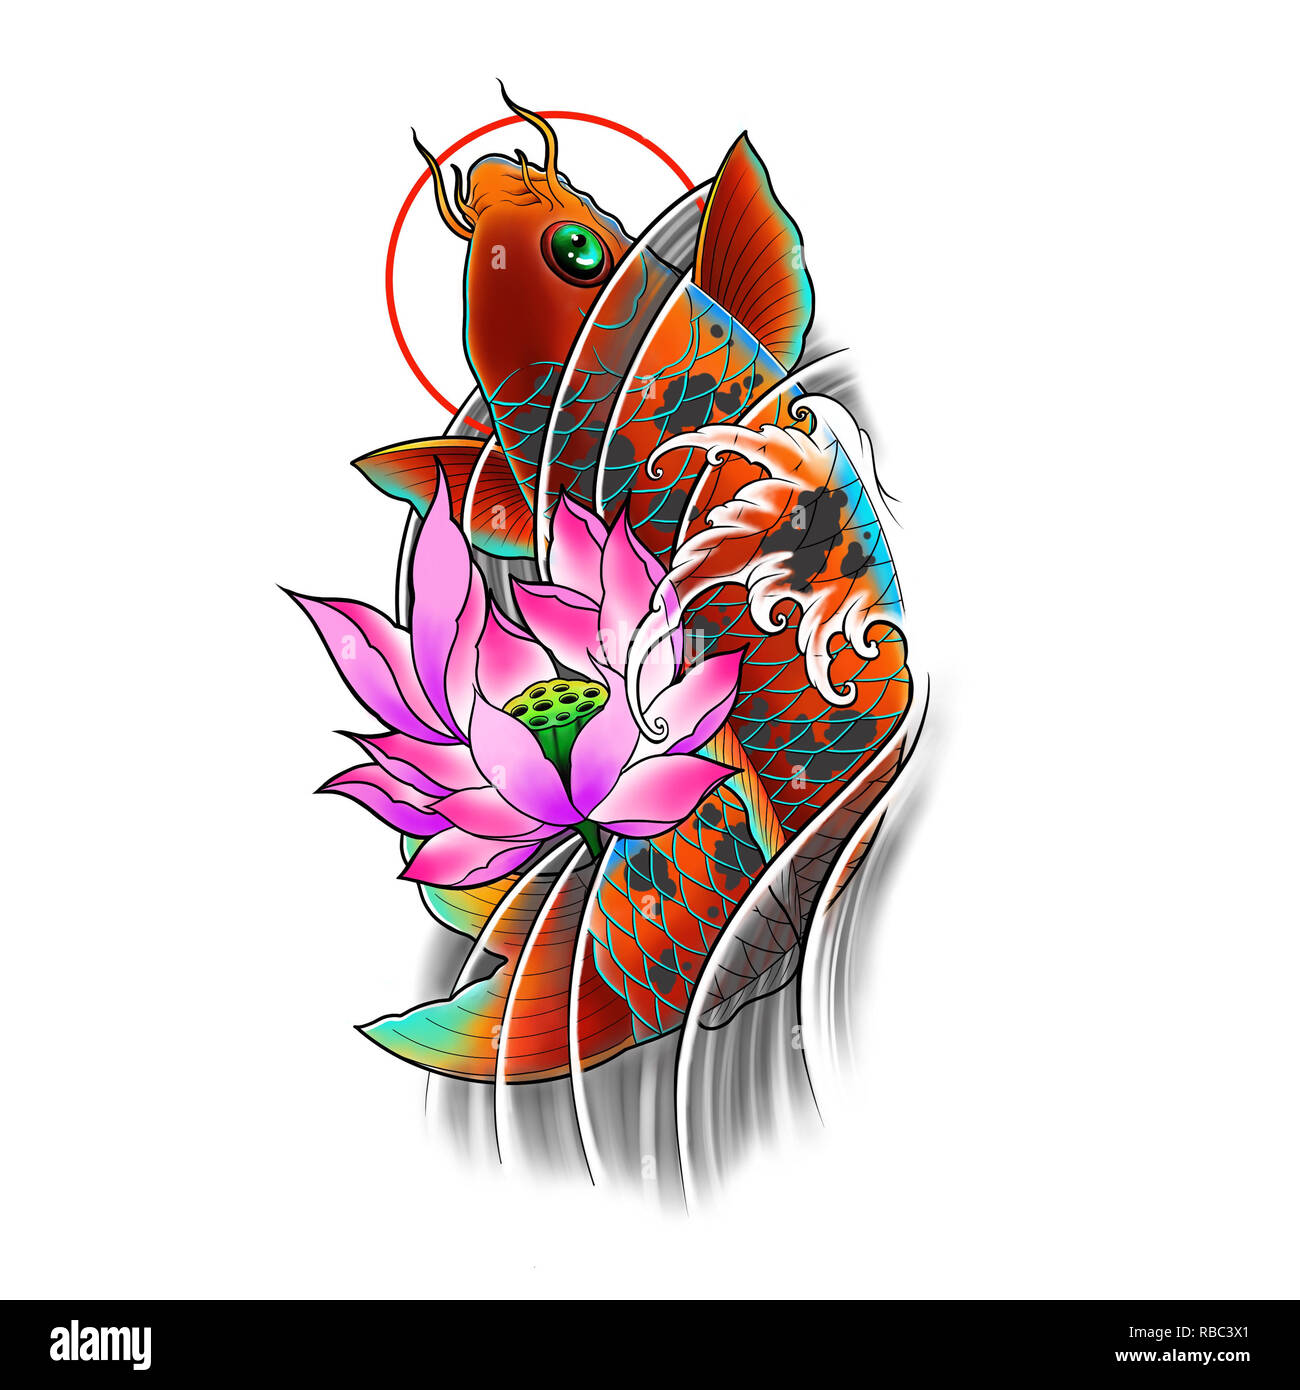 Disegnato A Mano I Pesci Koi Con Fiori Di Loto E Acqua Wave Tattoo Design Arte Digitale Pittura Giapponese In Stile Tatuaggio Tatuaggio Immagine Flash Foto Stock Alamy